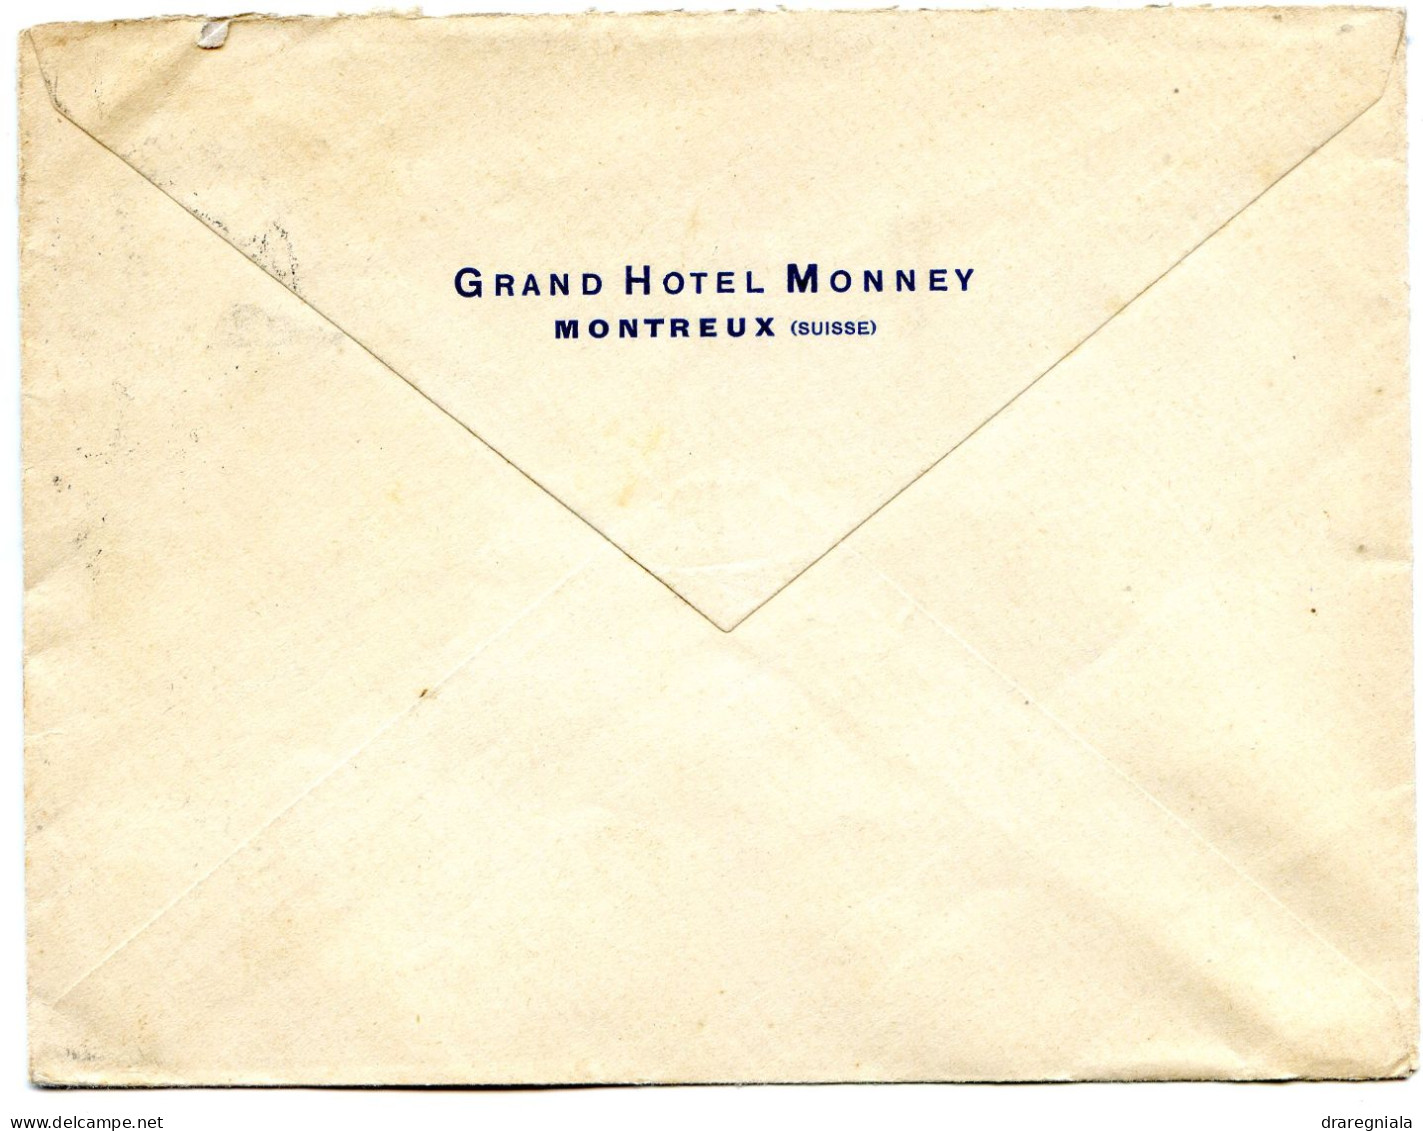 Mail Von Montreux 2 8 1930 - Tellbrustbild 160 - Grand Hotel Monney - Marcofilia